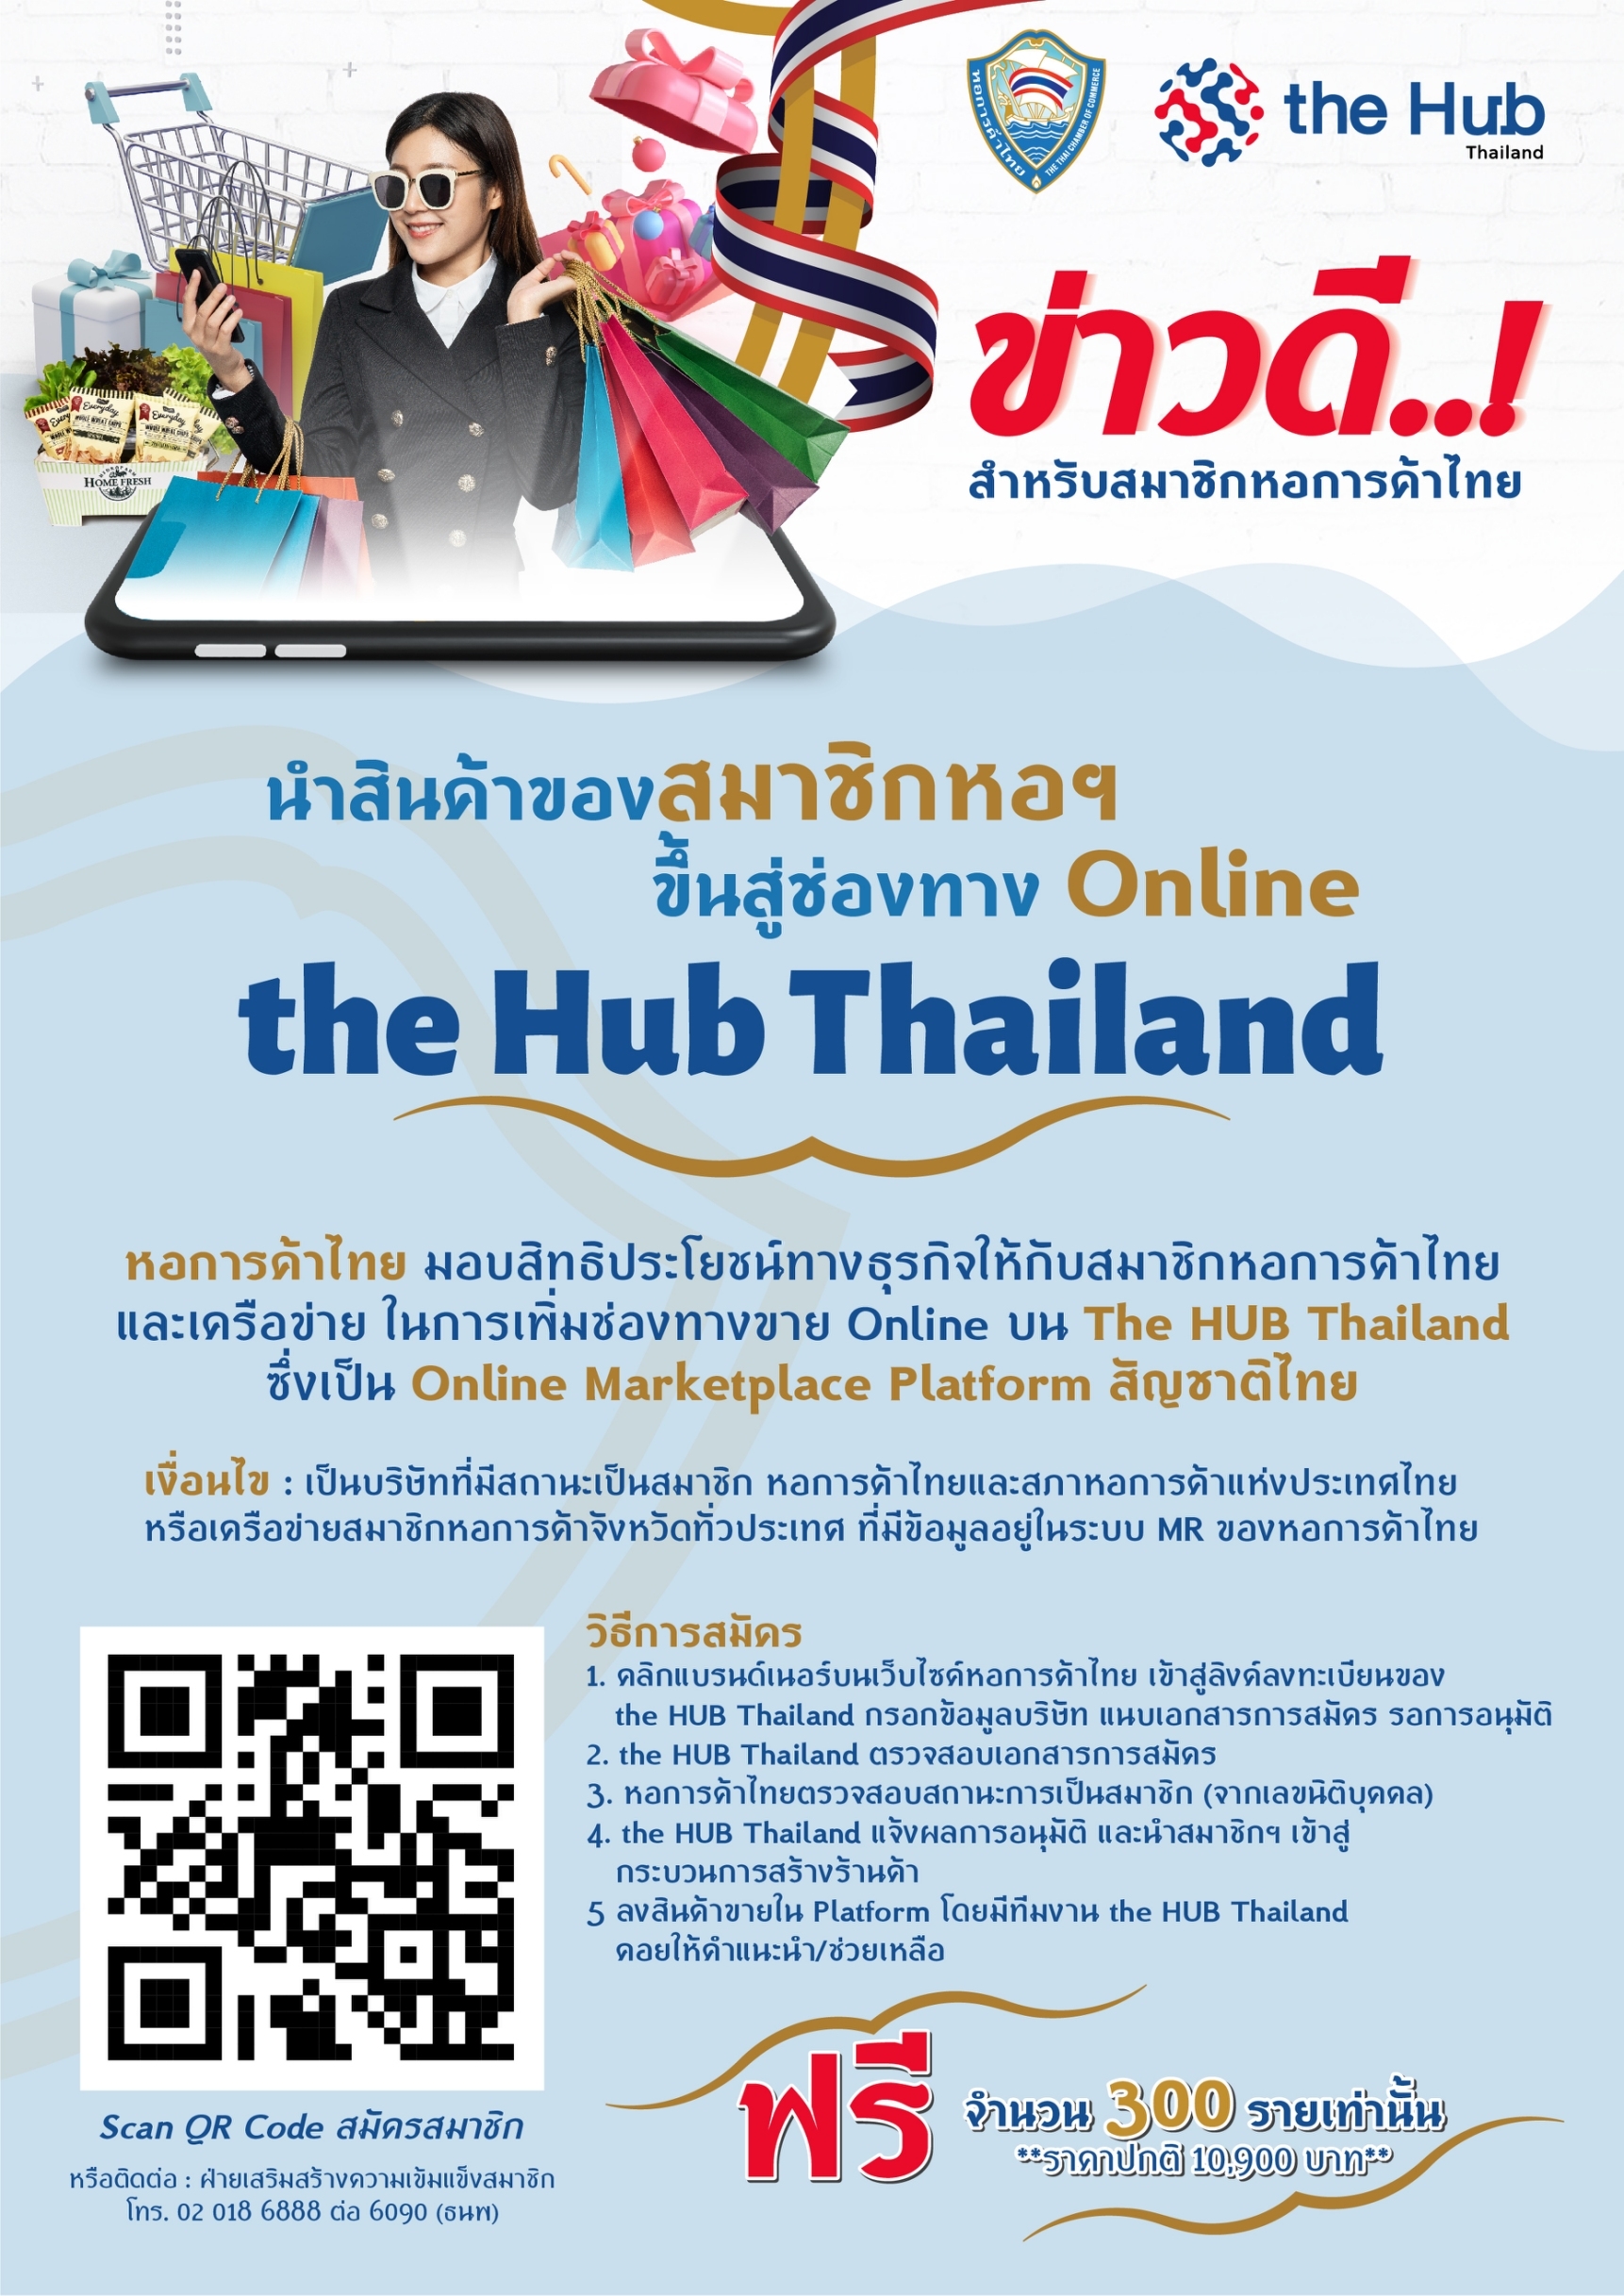 นำสินค้าของสมาชิกหอฯ ขึ้นสู่ช่องทาง Online The Hub Thailand